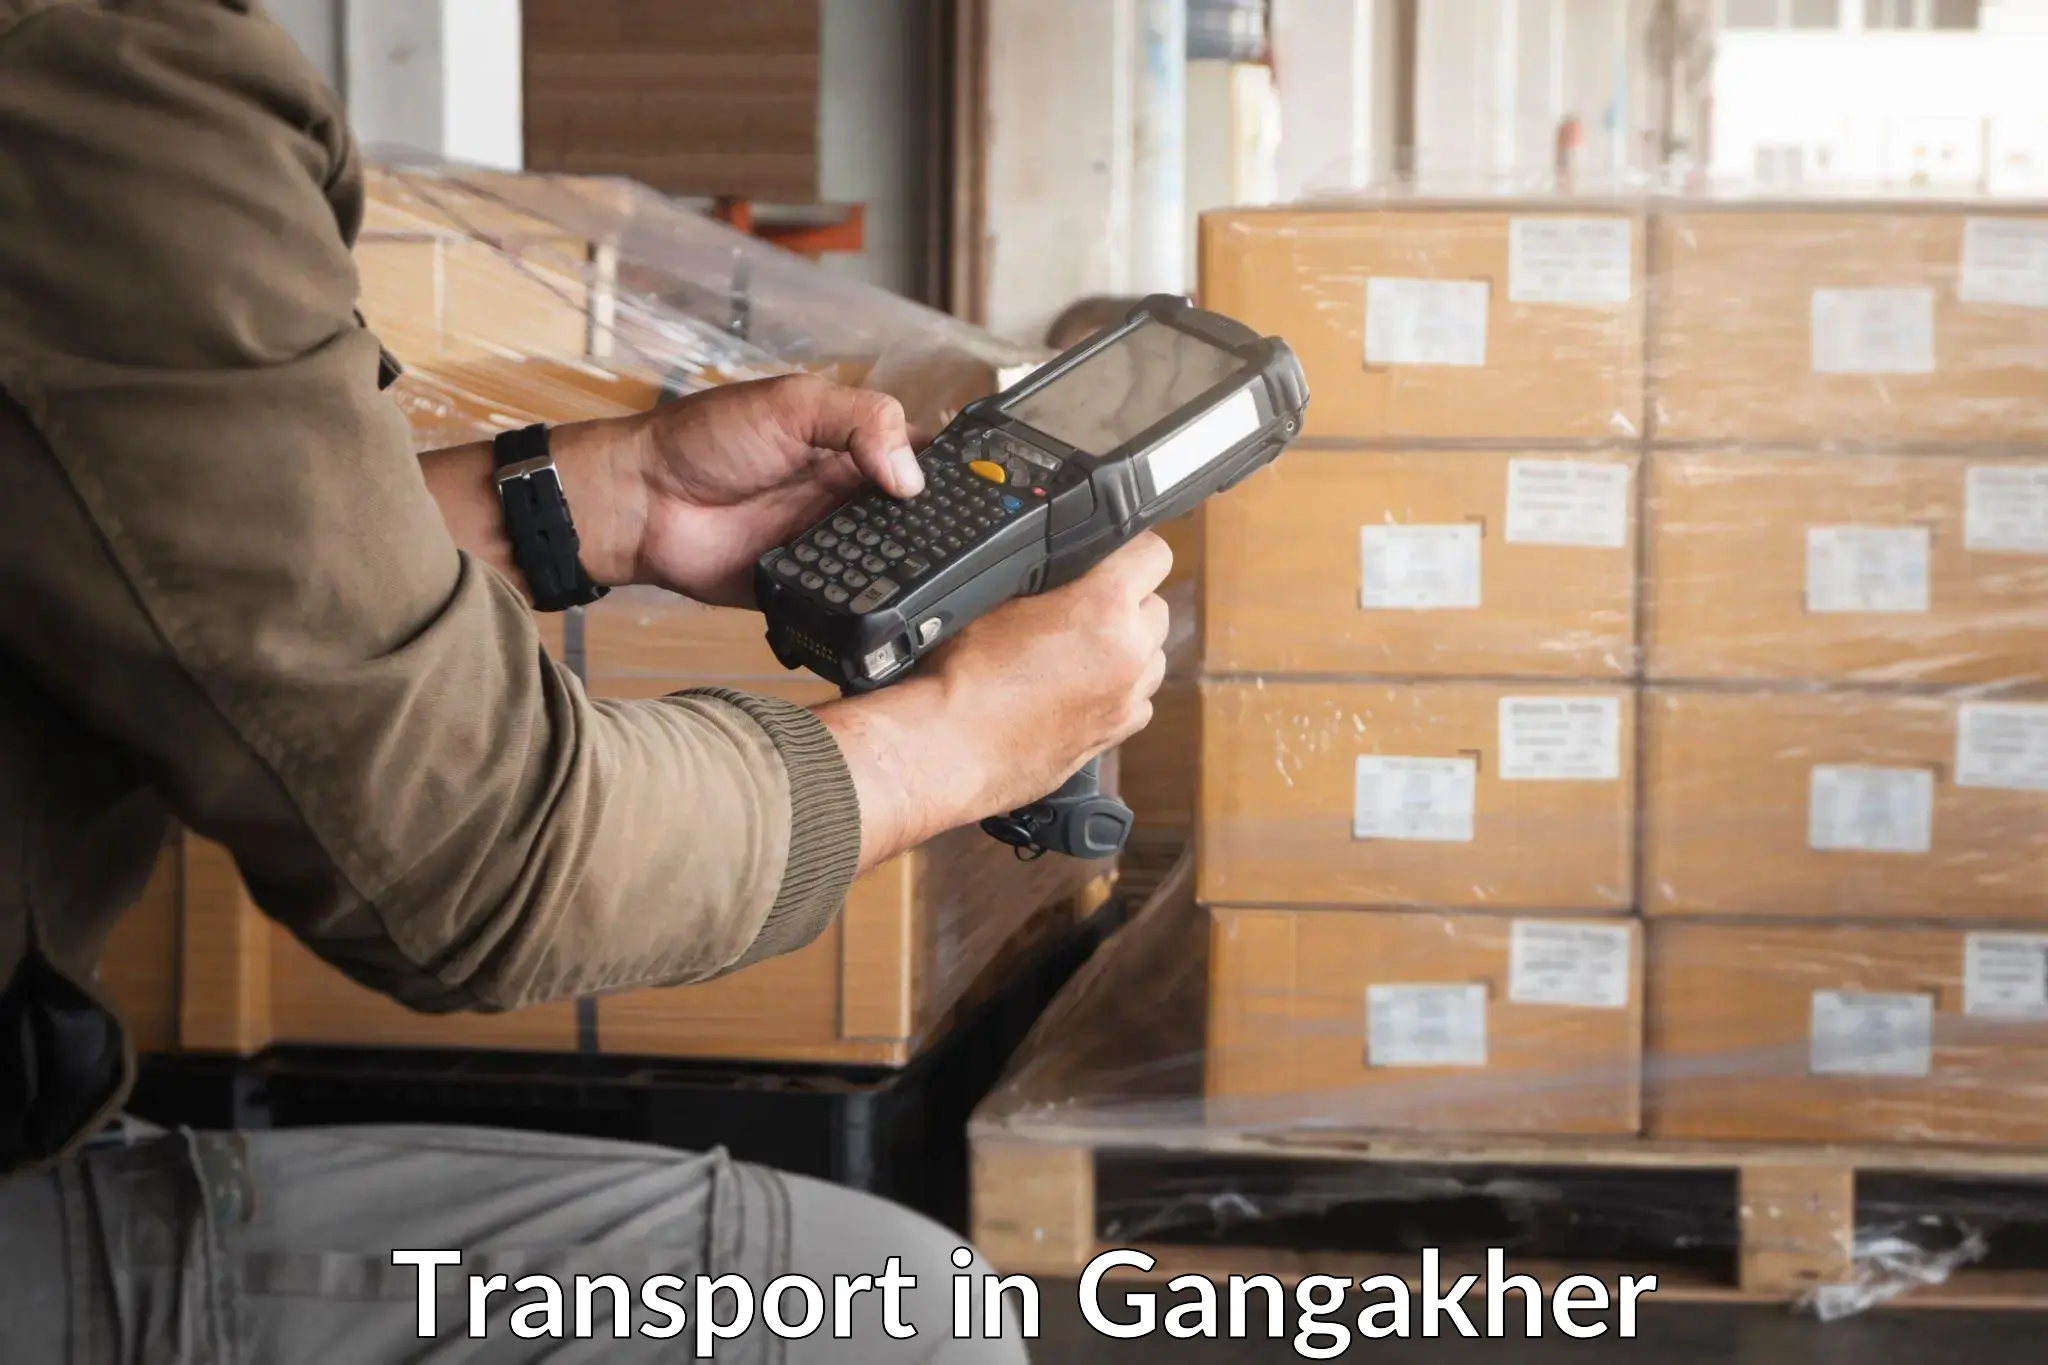 Parcel transport services in Gangakher